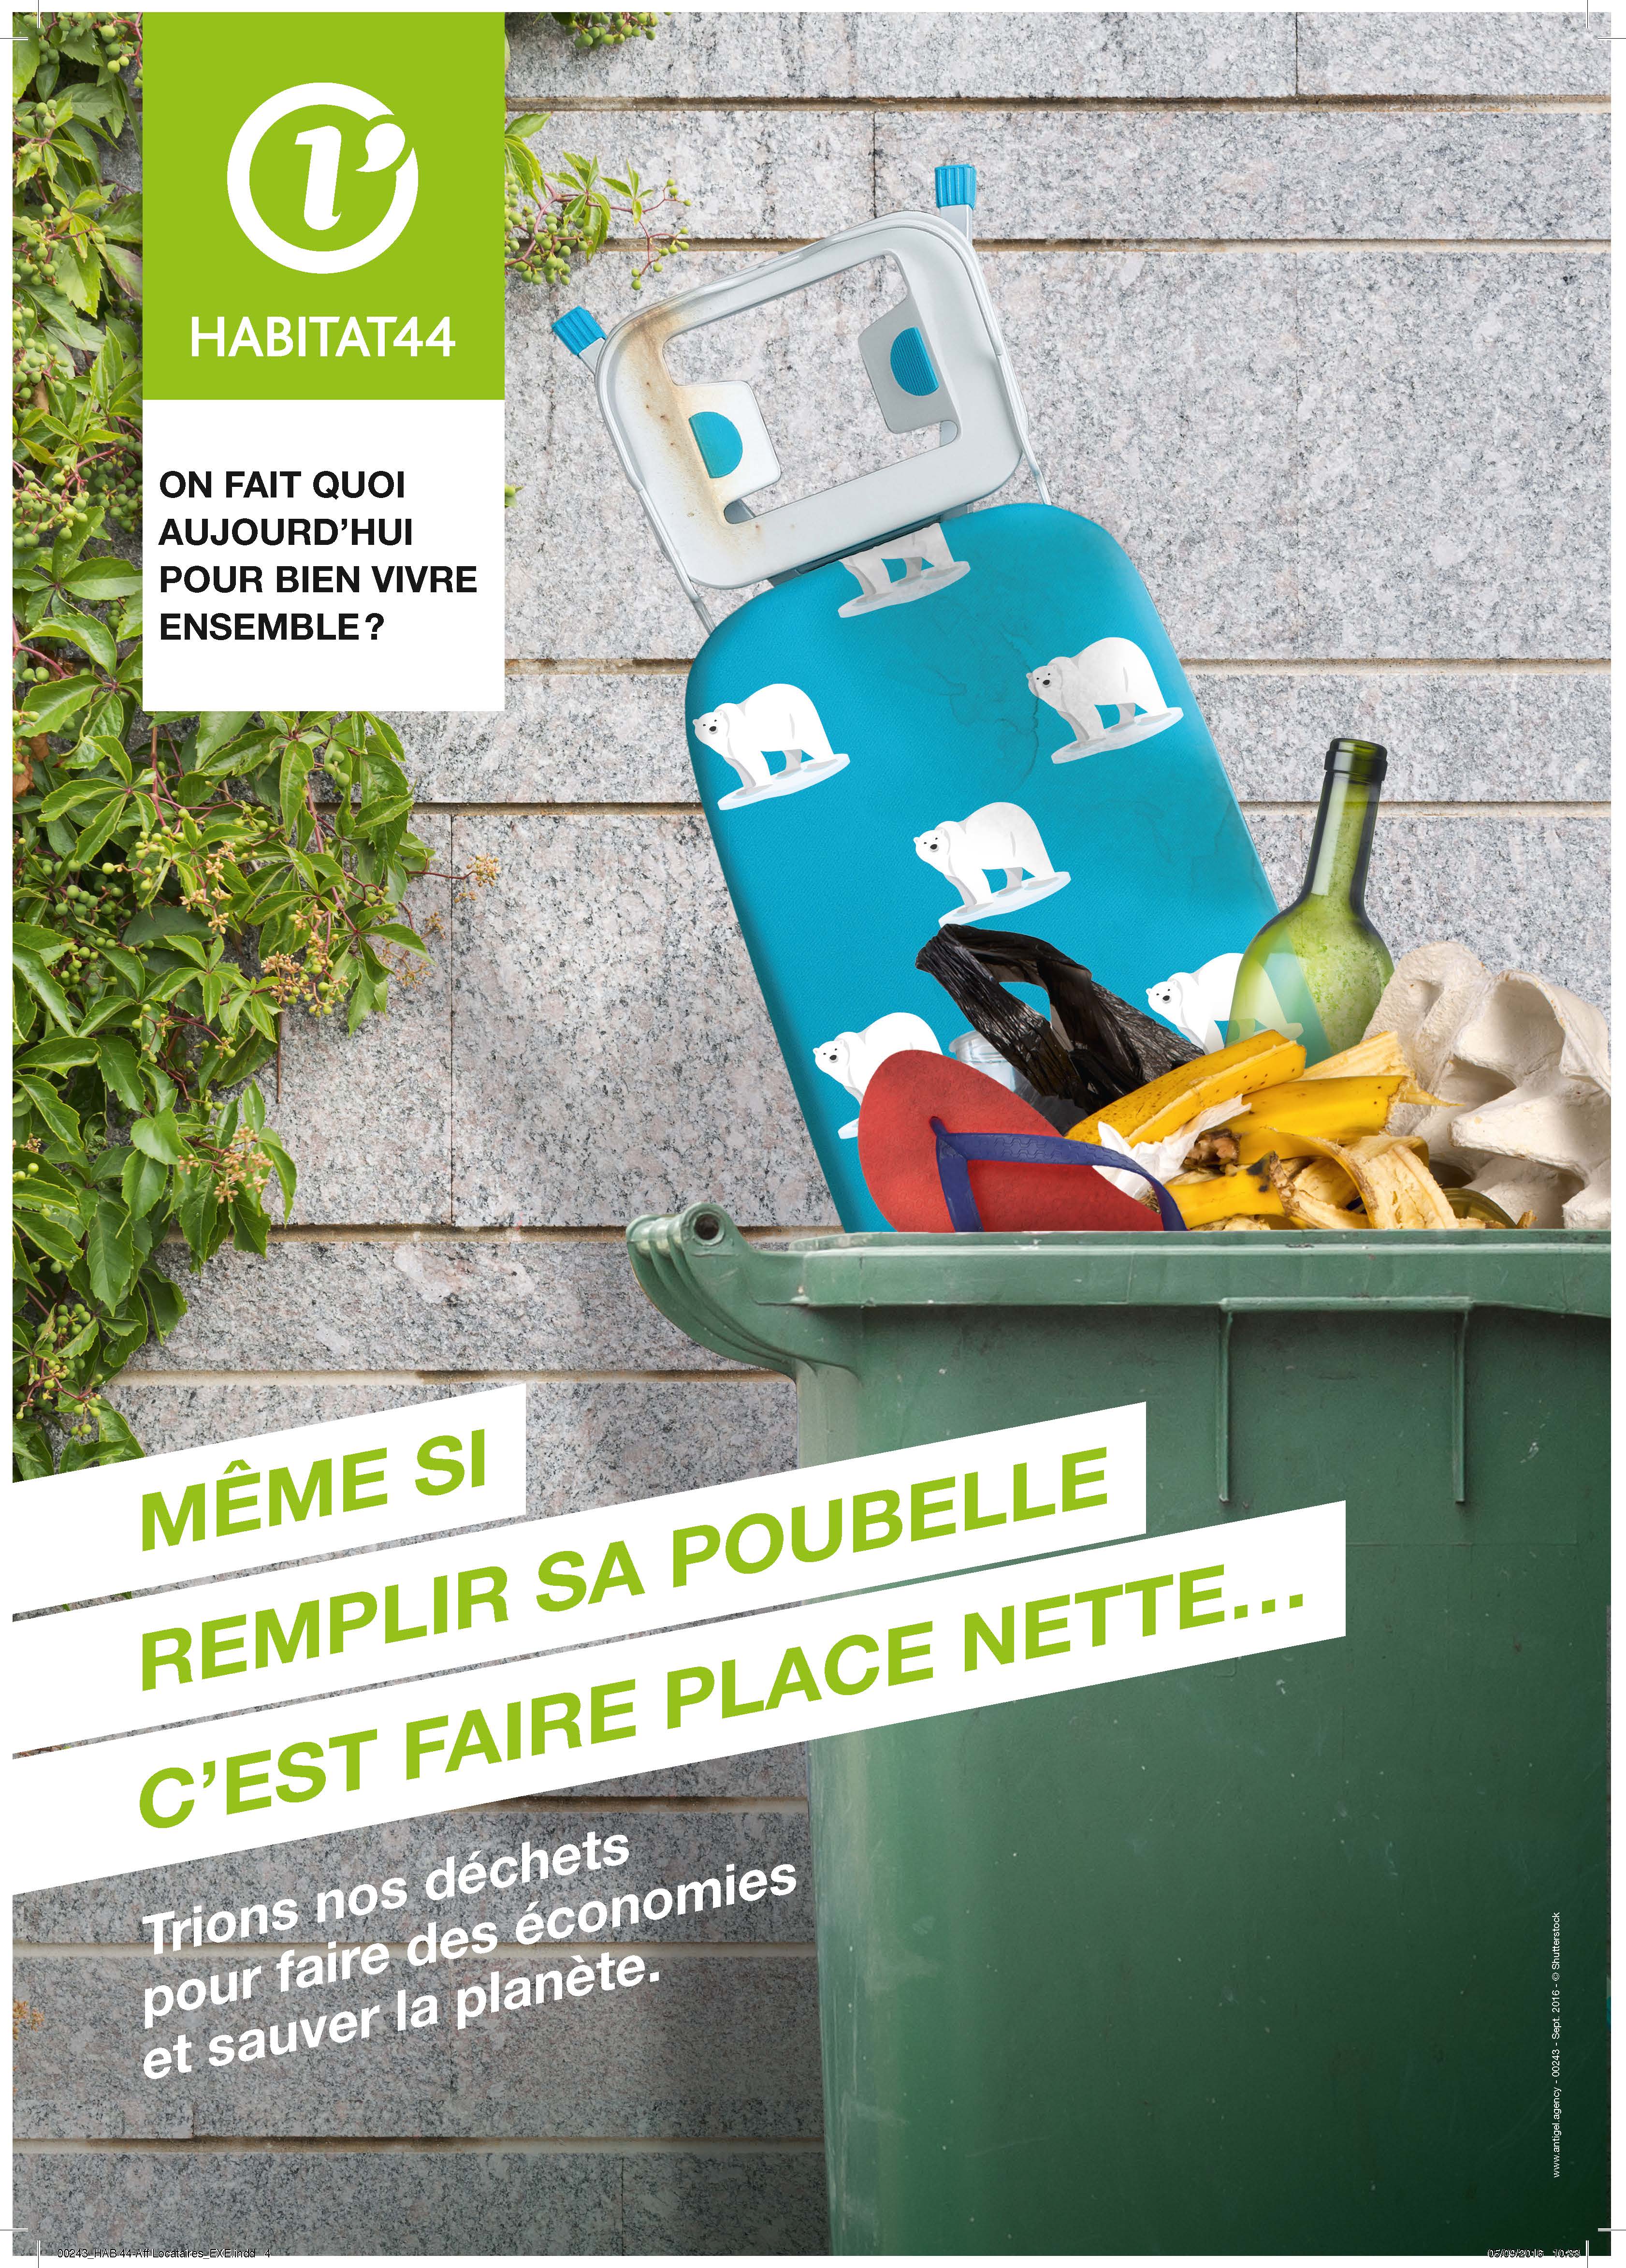 Campagne de bon voisinage : trions nos déchets